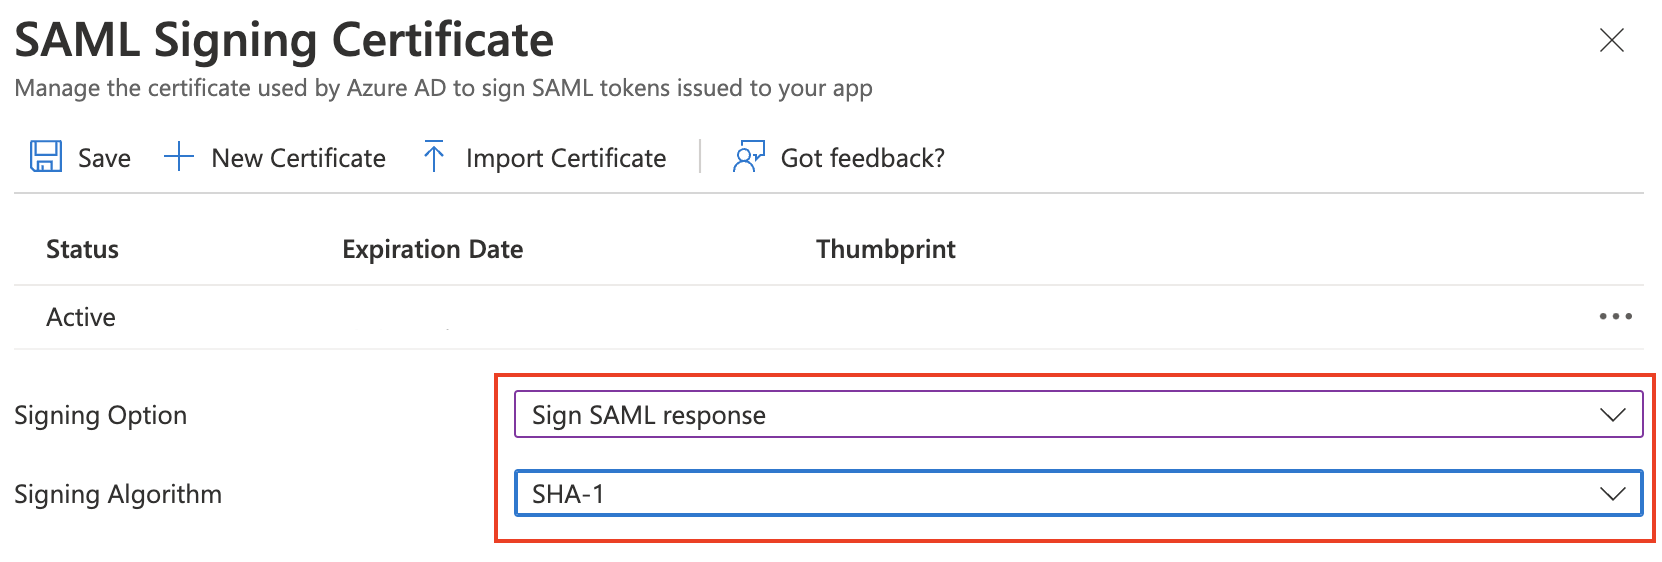 Select Sign SAML response and SHA-1 from the menu